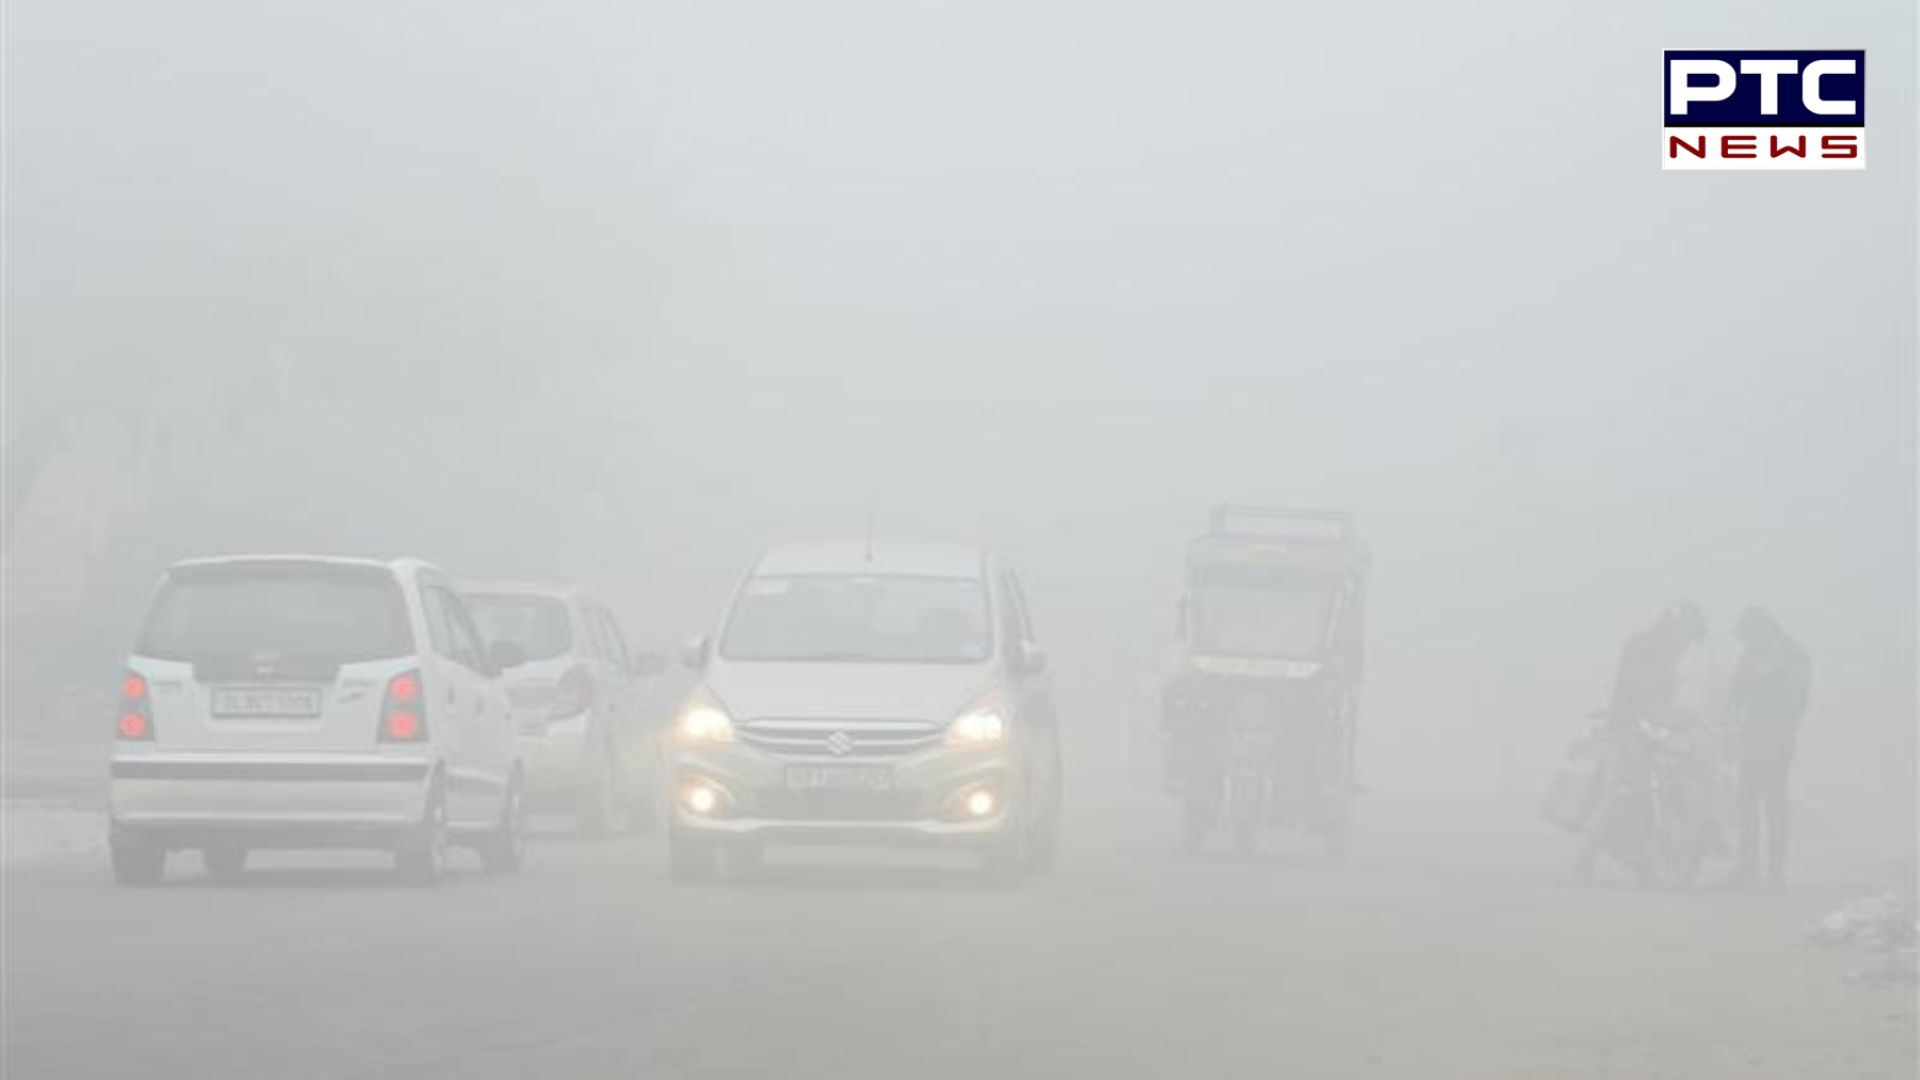 Punjab Weather: ਪੰਜਾਬ ’ਚ ਠੰਢ ਨੇ ਫੜਿਆ ਜ਼ੋਰ; ਸੰਘਣੀ ਧੁੰਦ ਦਾ ਆਰੇਂਜ ਅਲਰਟ ਜਾਰੀ